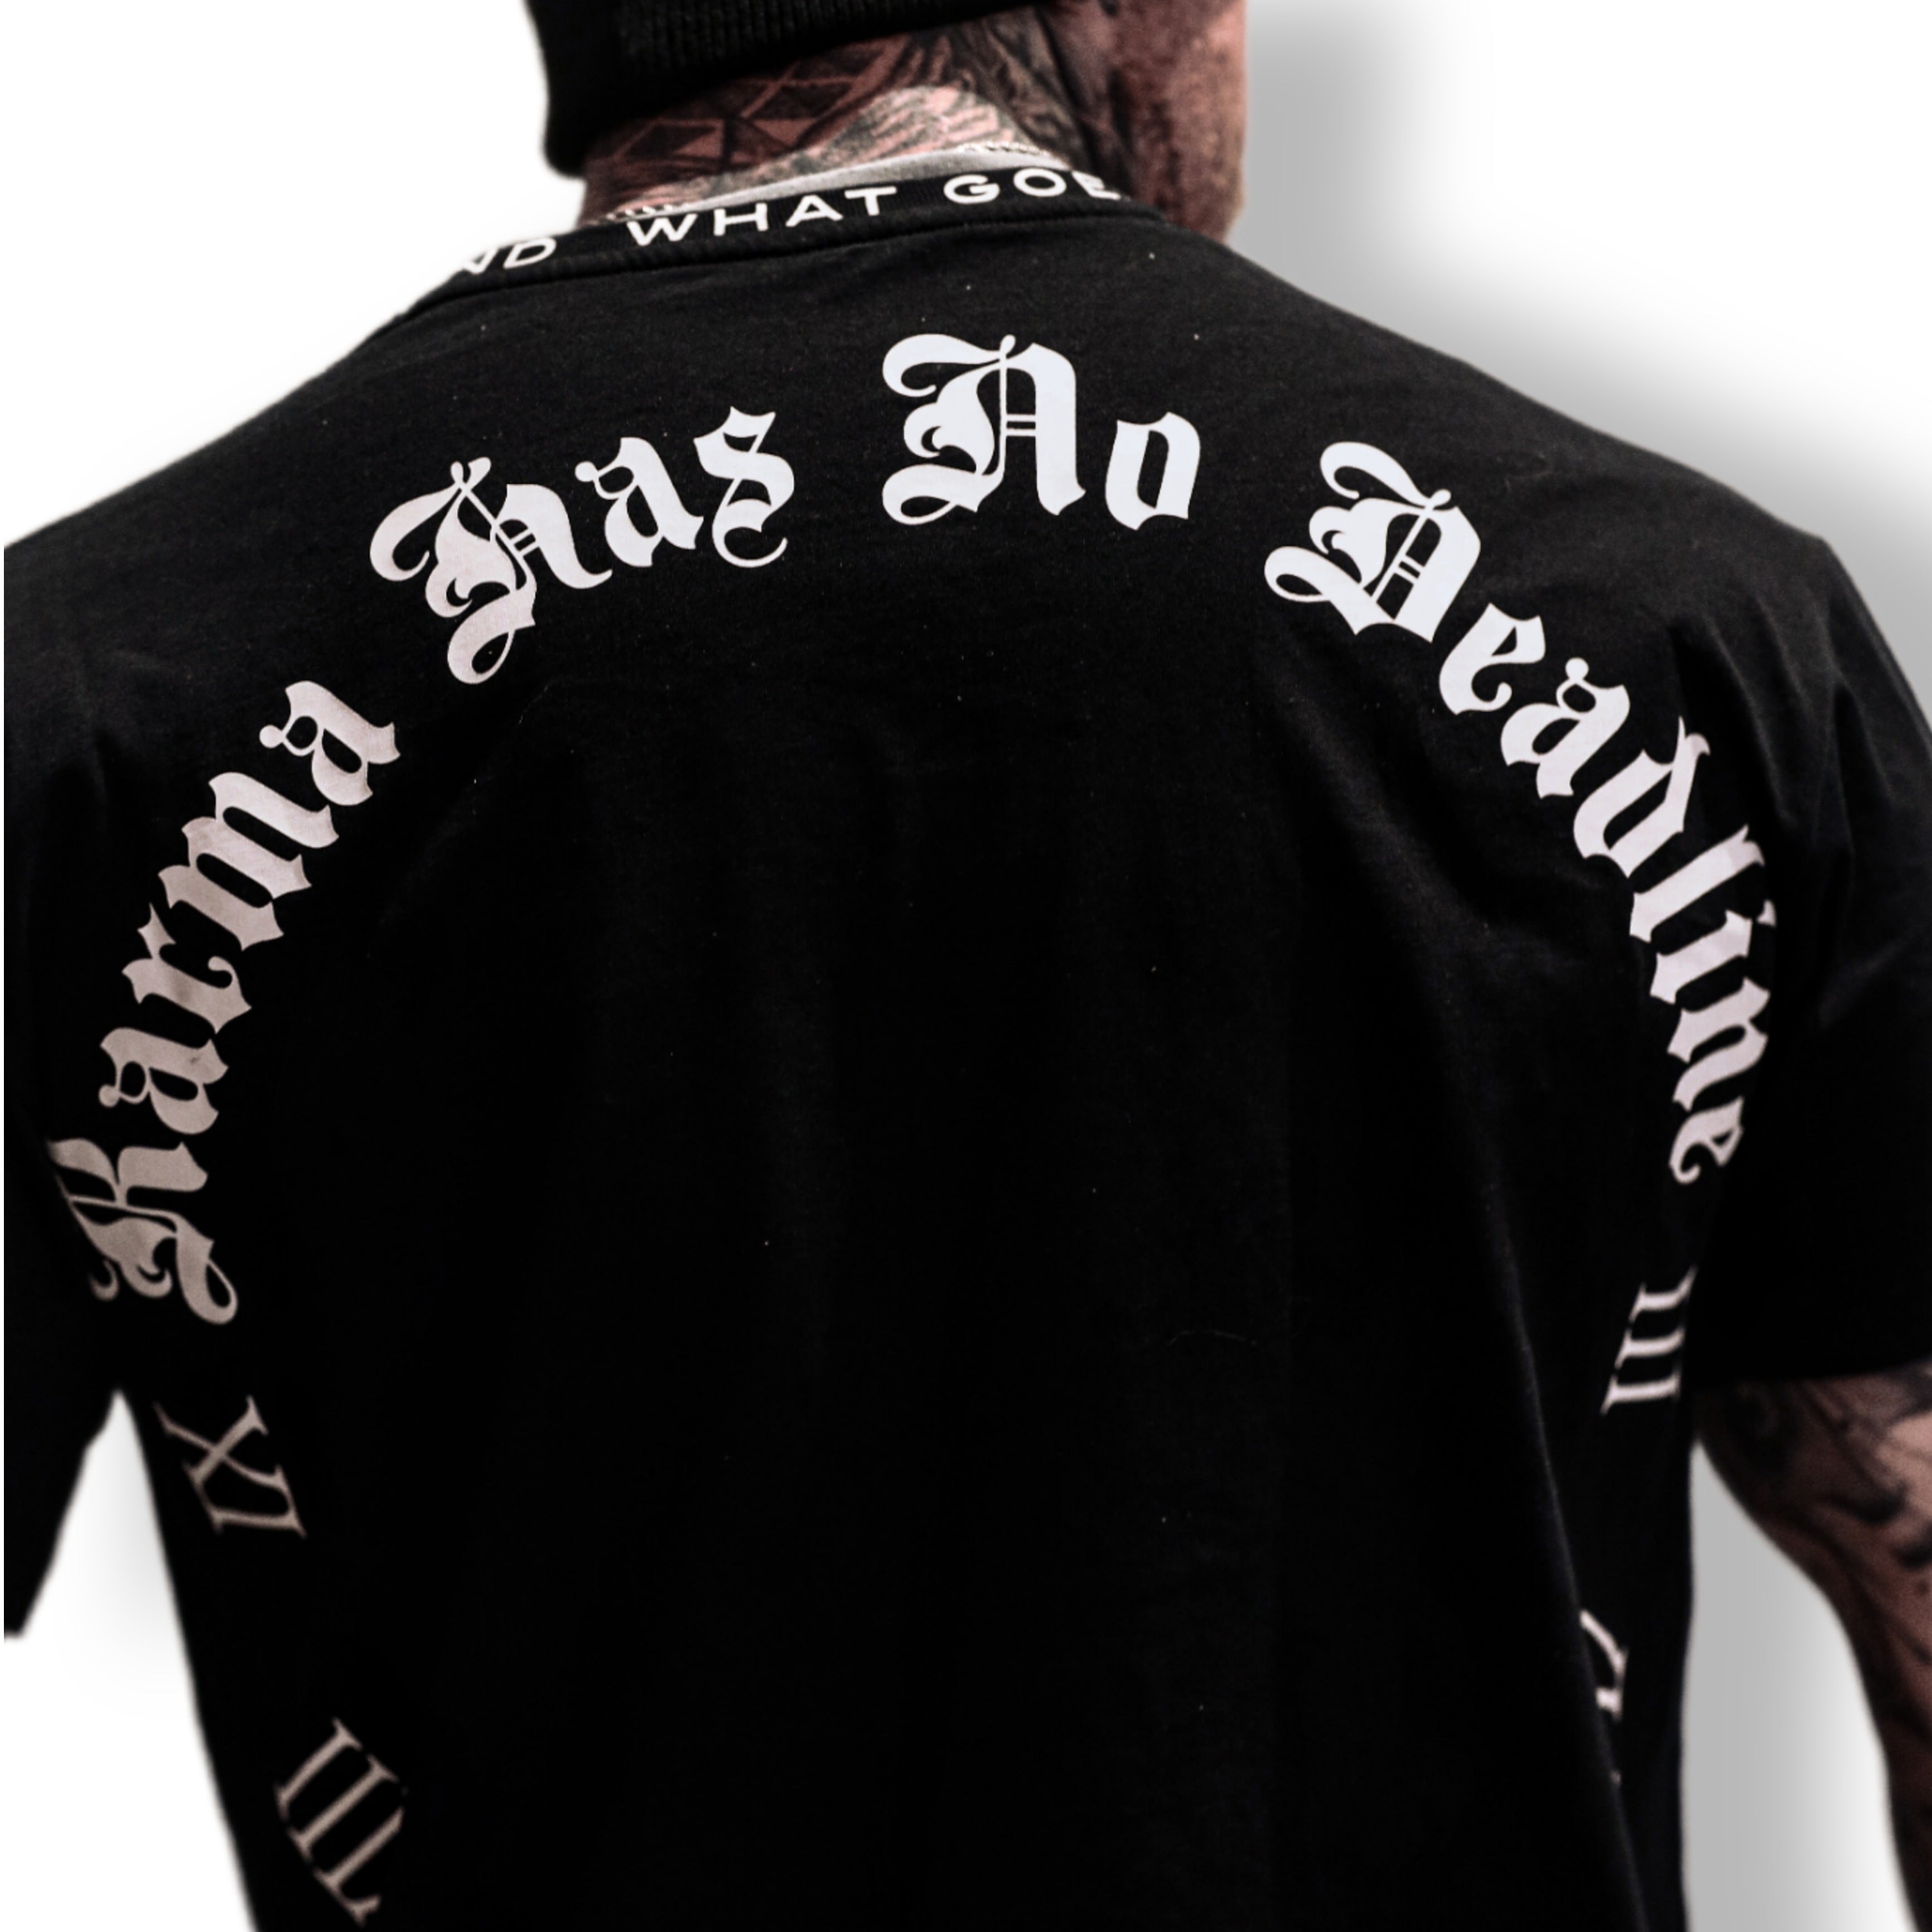 MVL „Karma has no Deadline“ übergroßes T-Shirt – schwarz